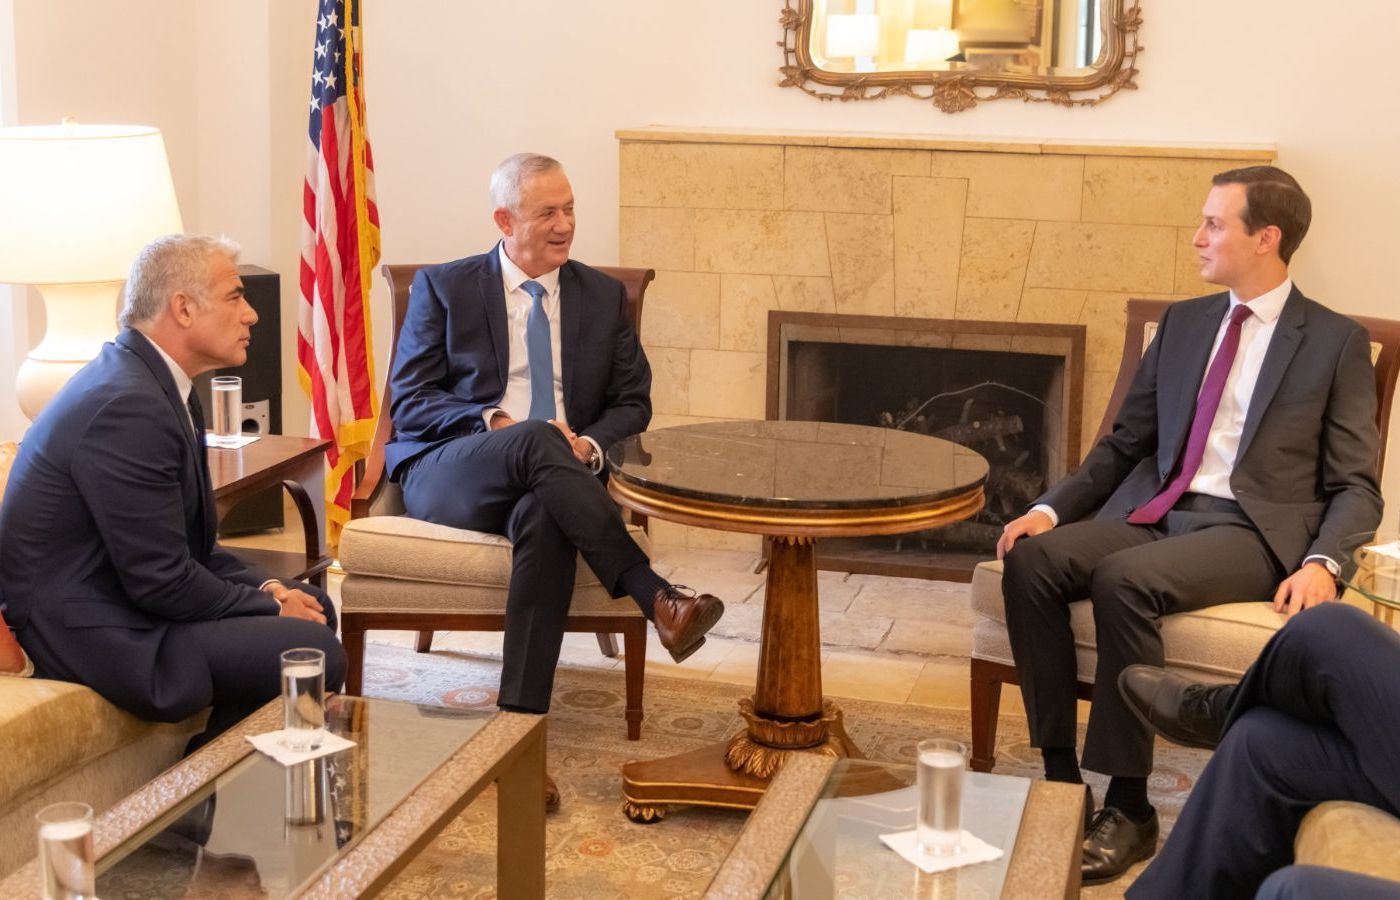 Con rể Tổng thống Mỹ gặp người được trao quyền thành lập Chính phủ Israel mới